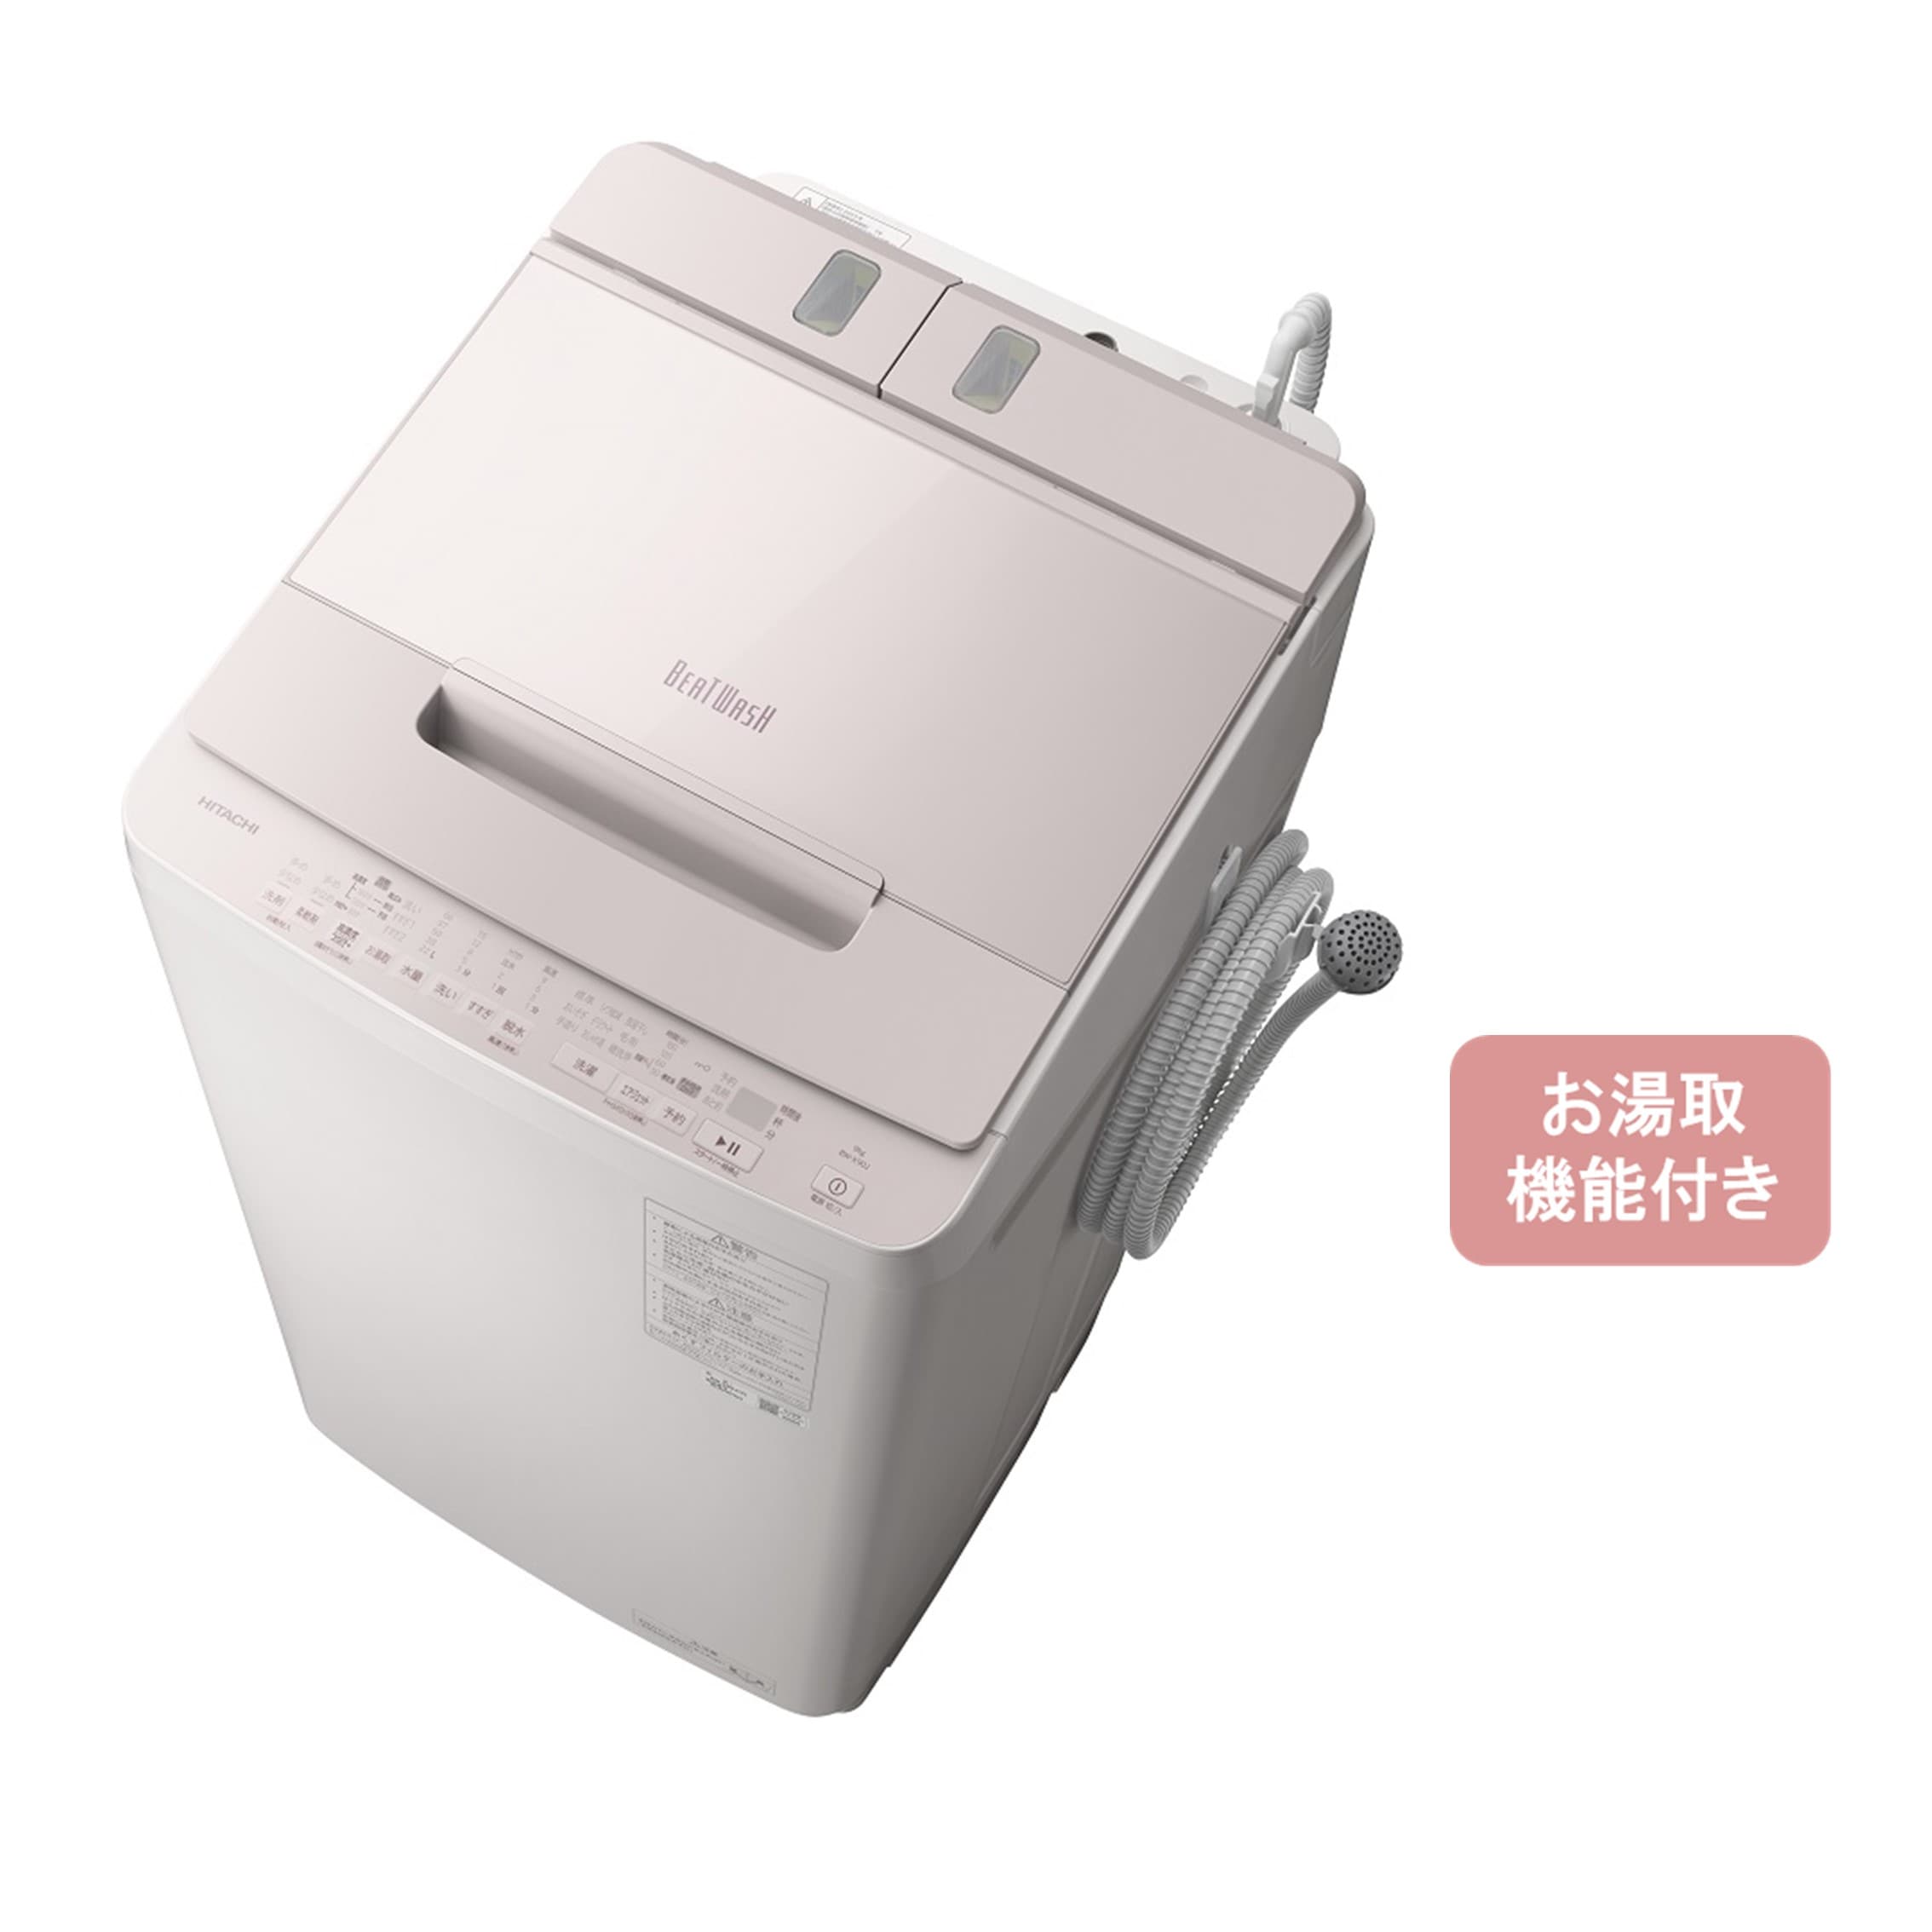 ▫メーカーHITACHI608♡ 洗濯機 日立 BEAT WASH  9kg 乾燥5kg 設置配送無料